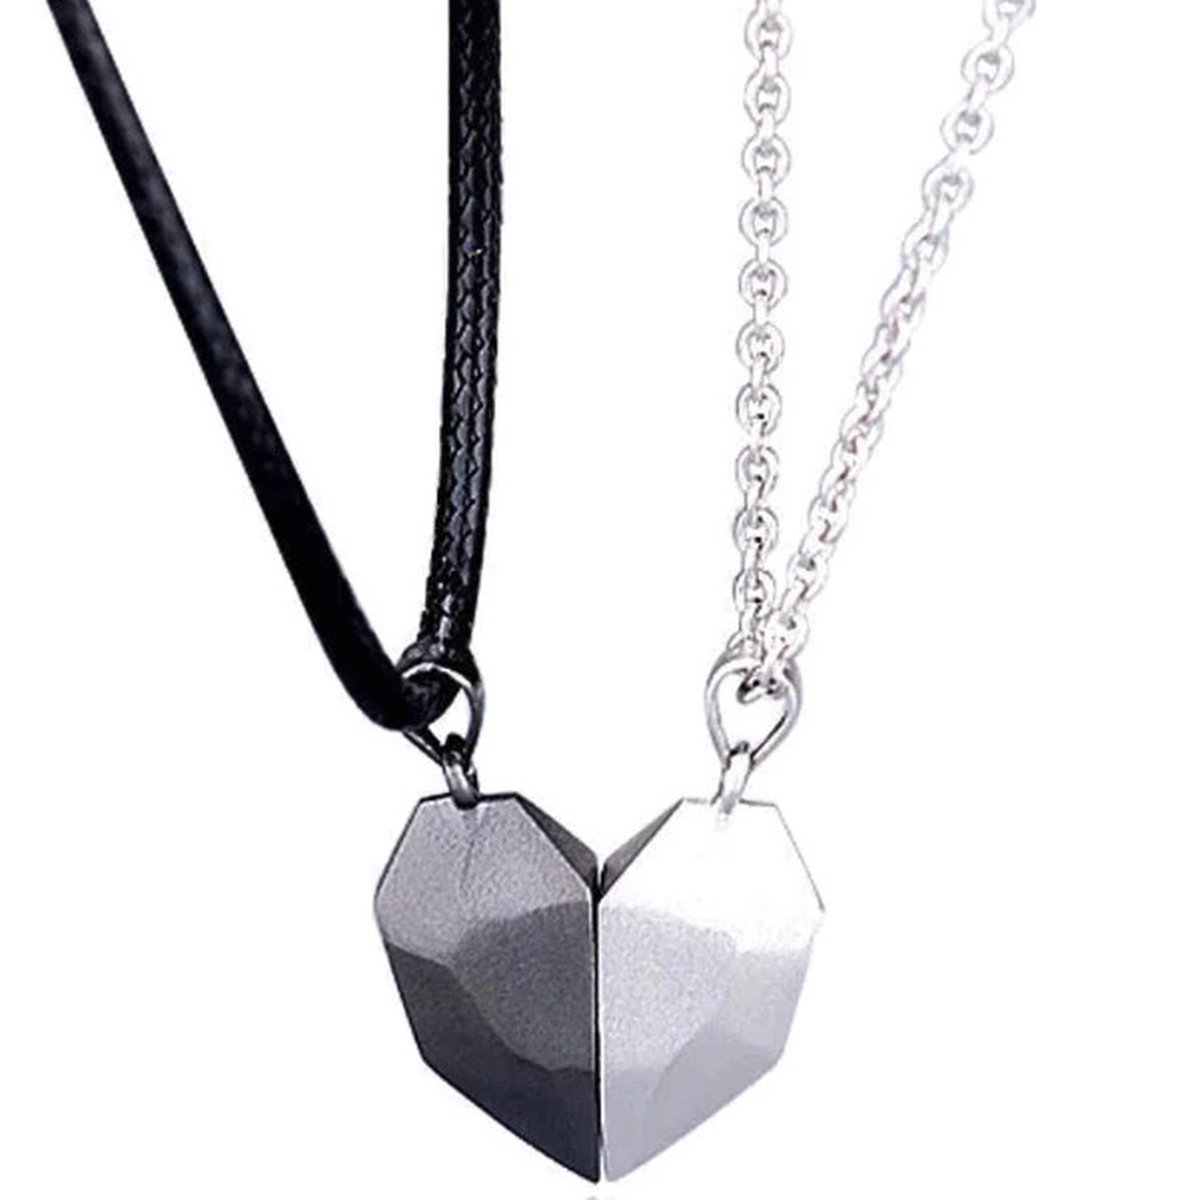 Magnetische Hartjes Ketting Set voor Hem en Haar - Zwart / Zilver kleurig- Romantisch Liefdes Cadeau - Mannen Cadeautjes - Cadeau voor Man - TrendFox